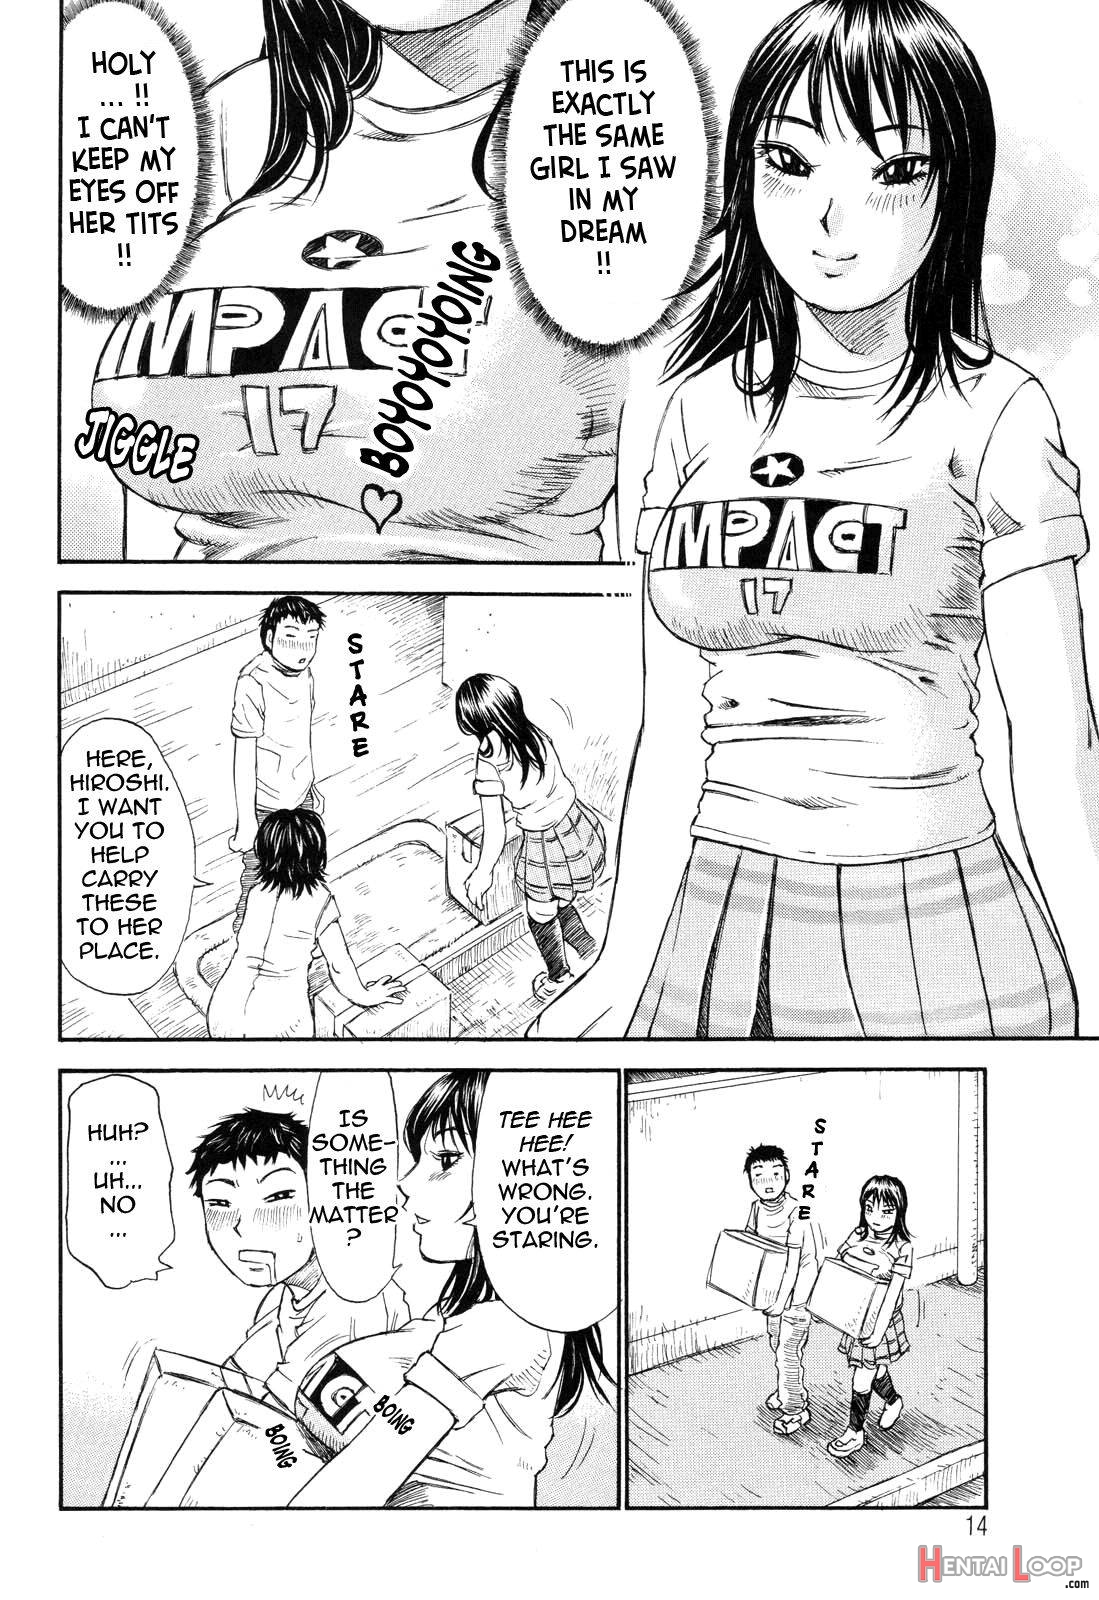 Umarete Hajimete page 14